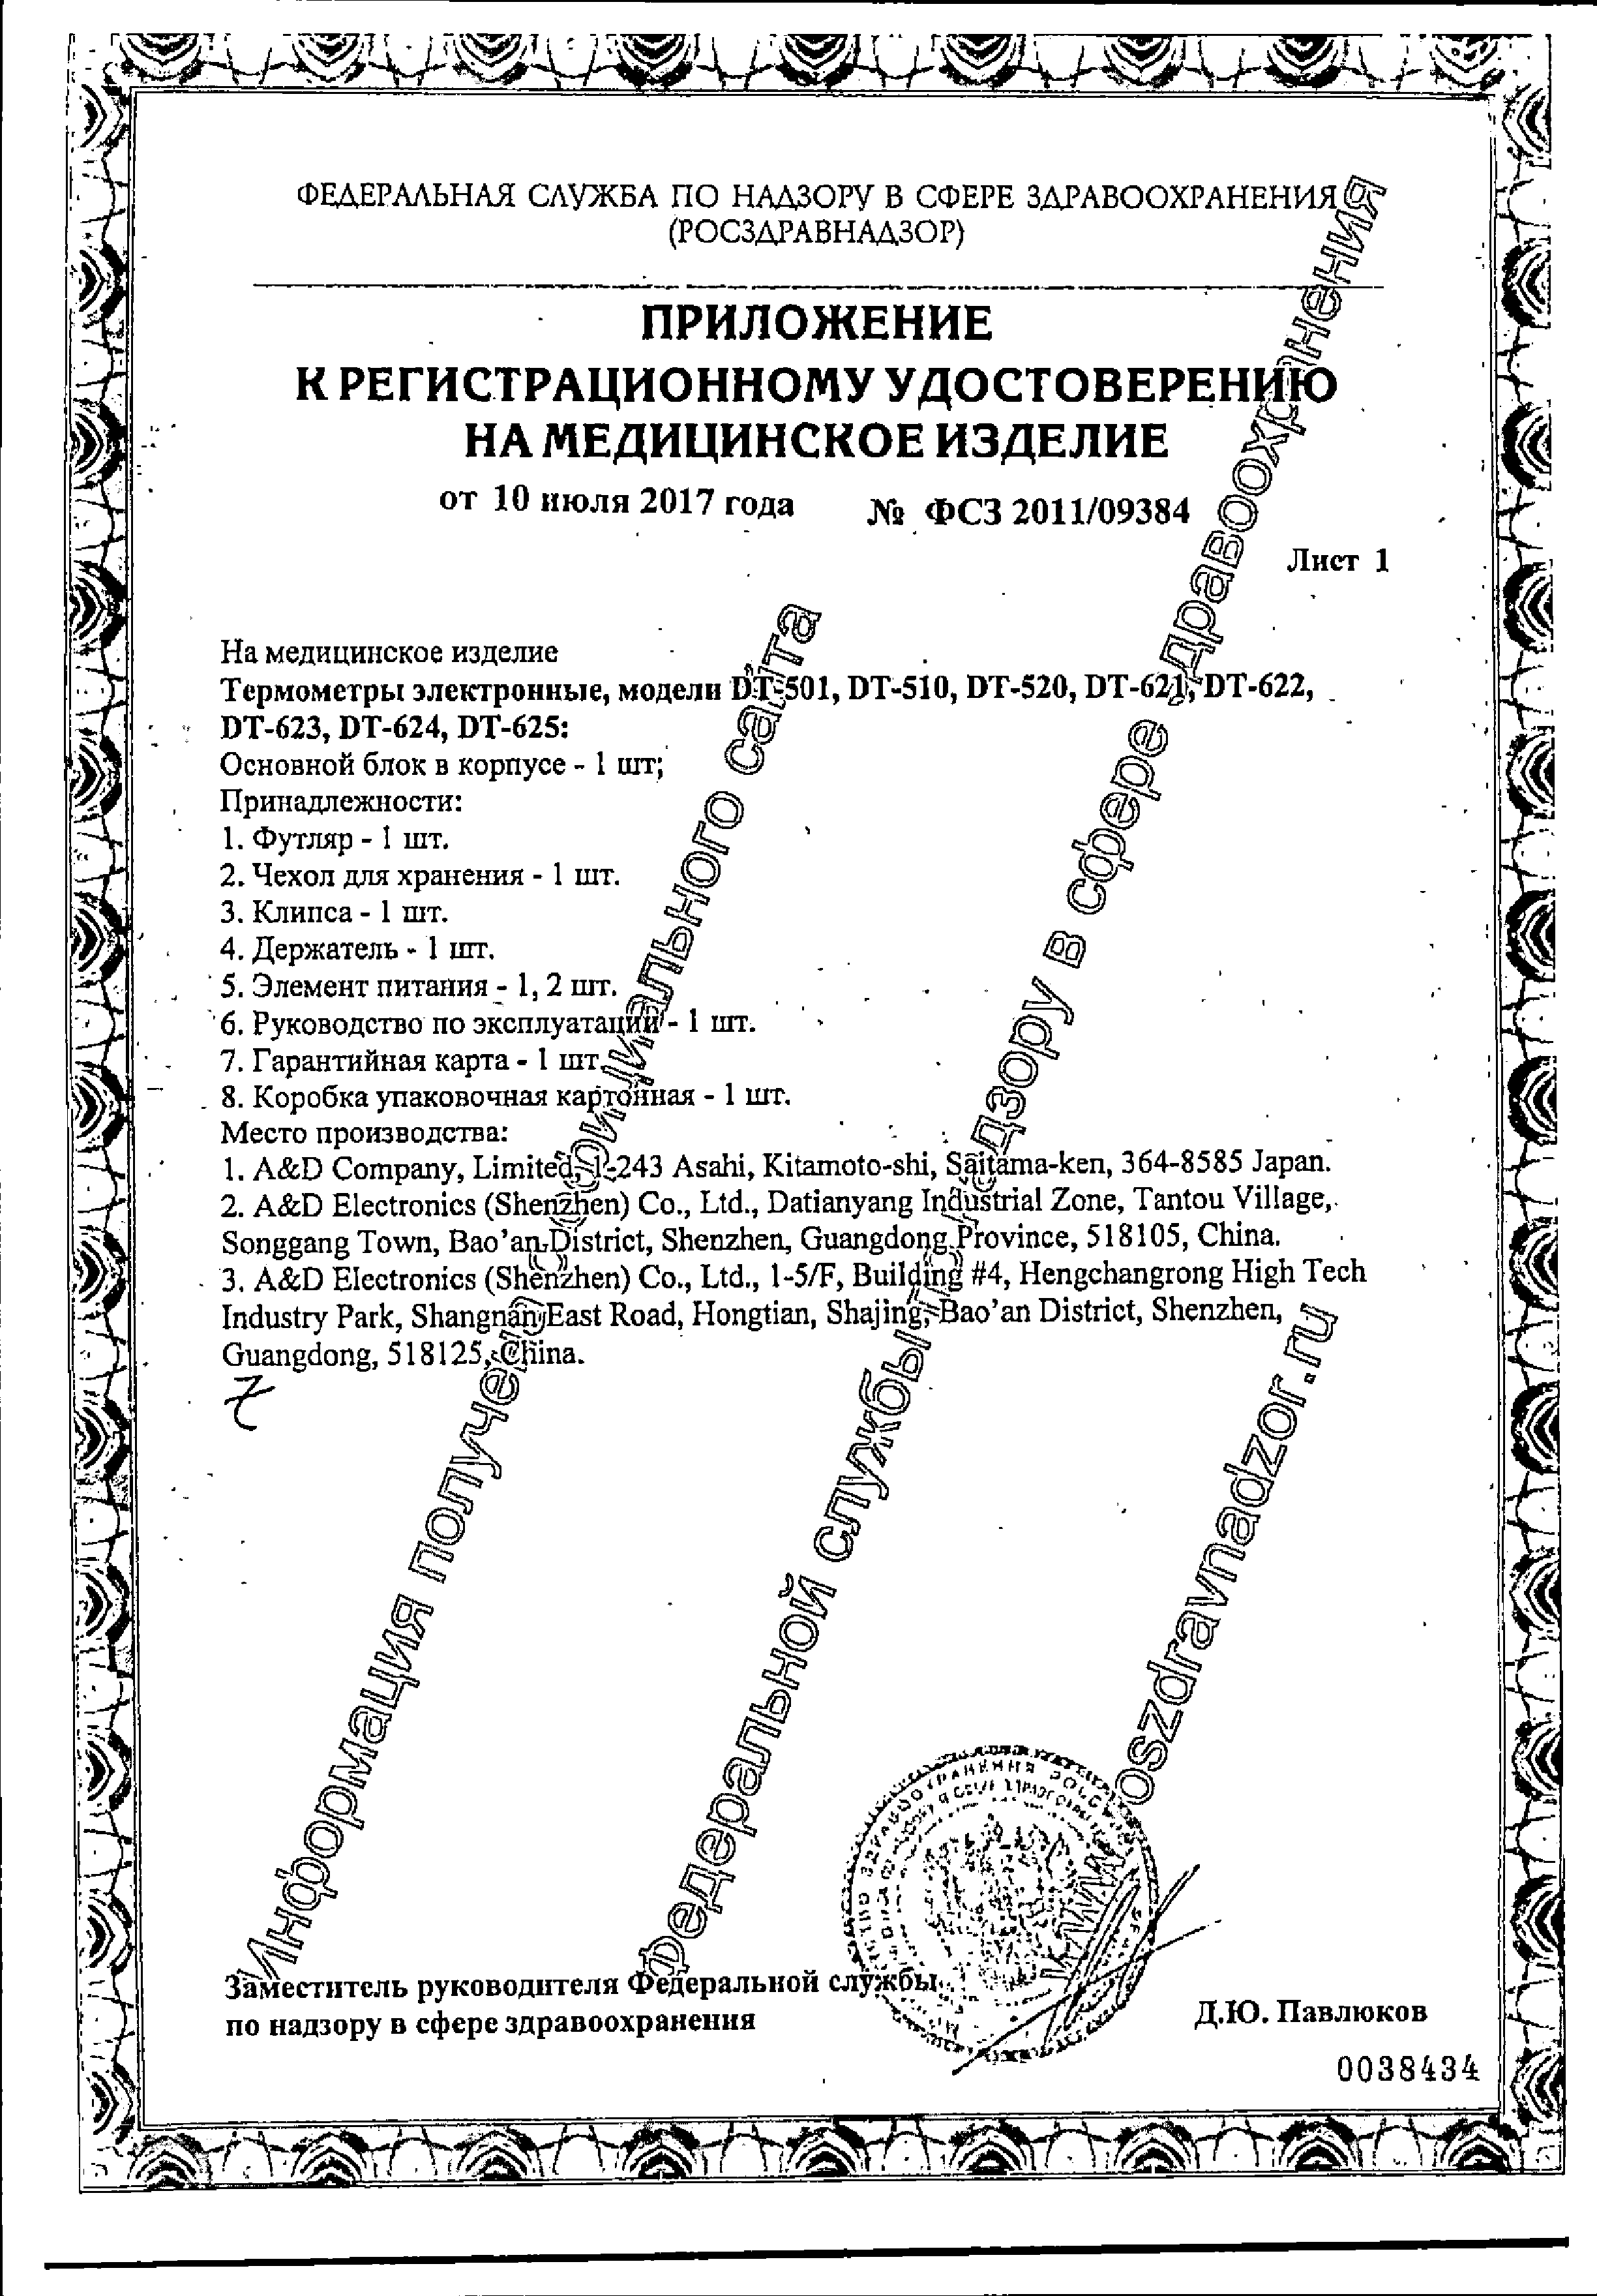 Термометр электронный AND DT-501 сертификат